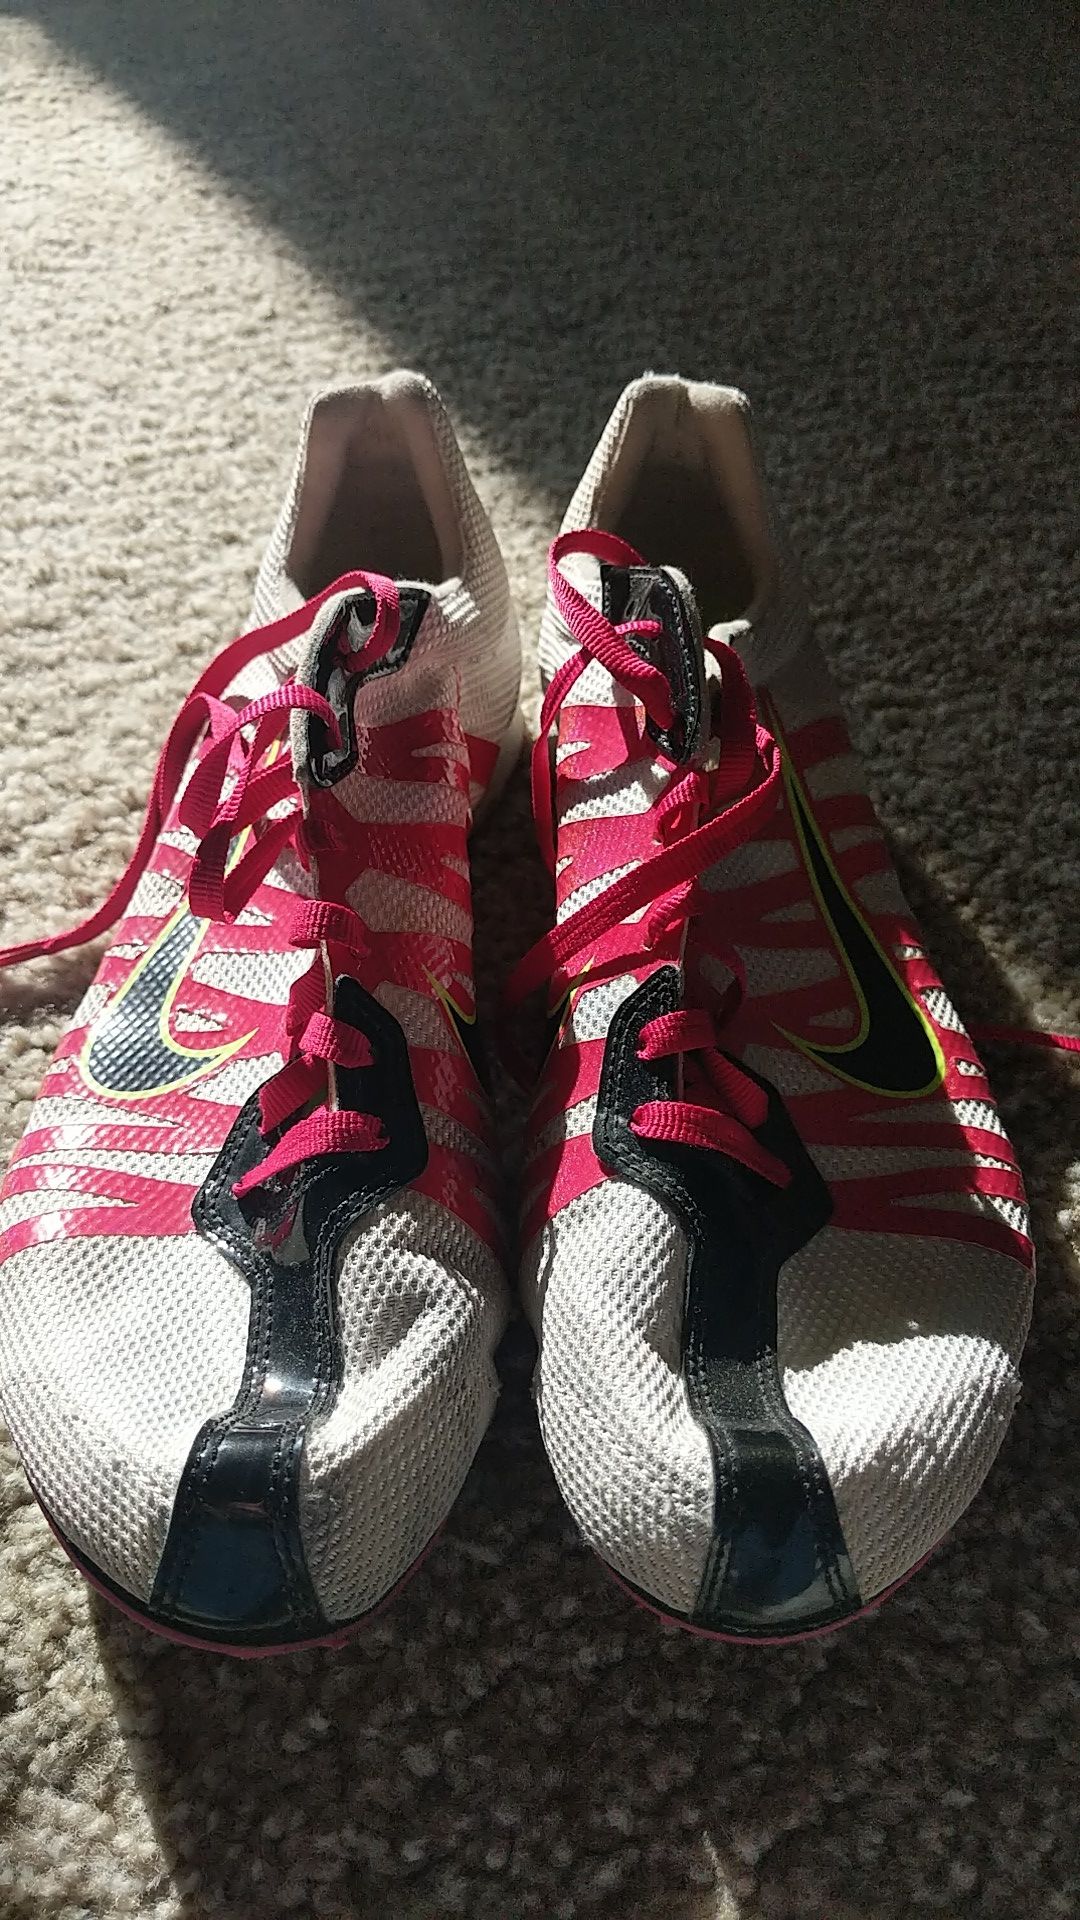 Nike track spike shoes